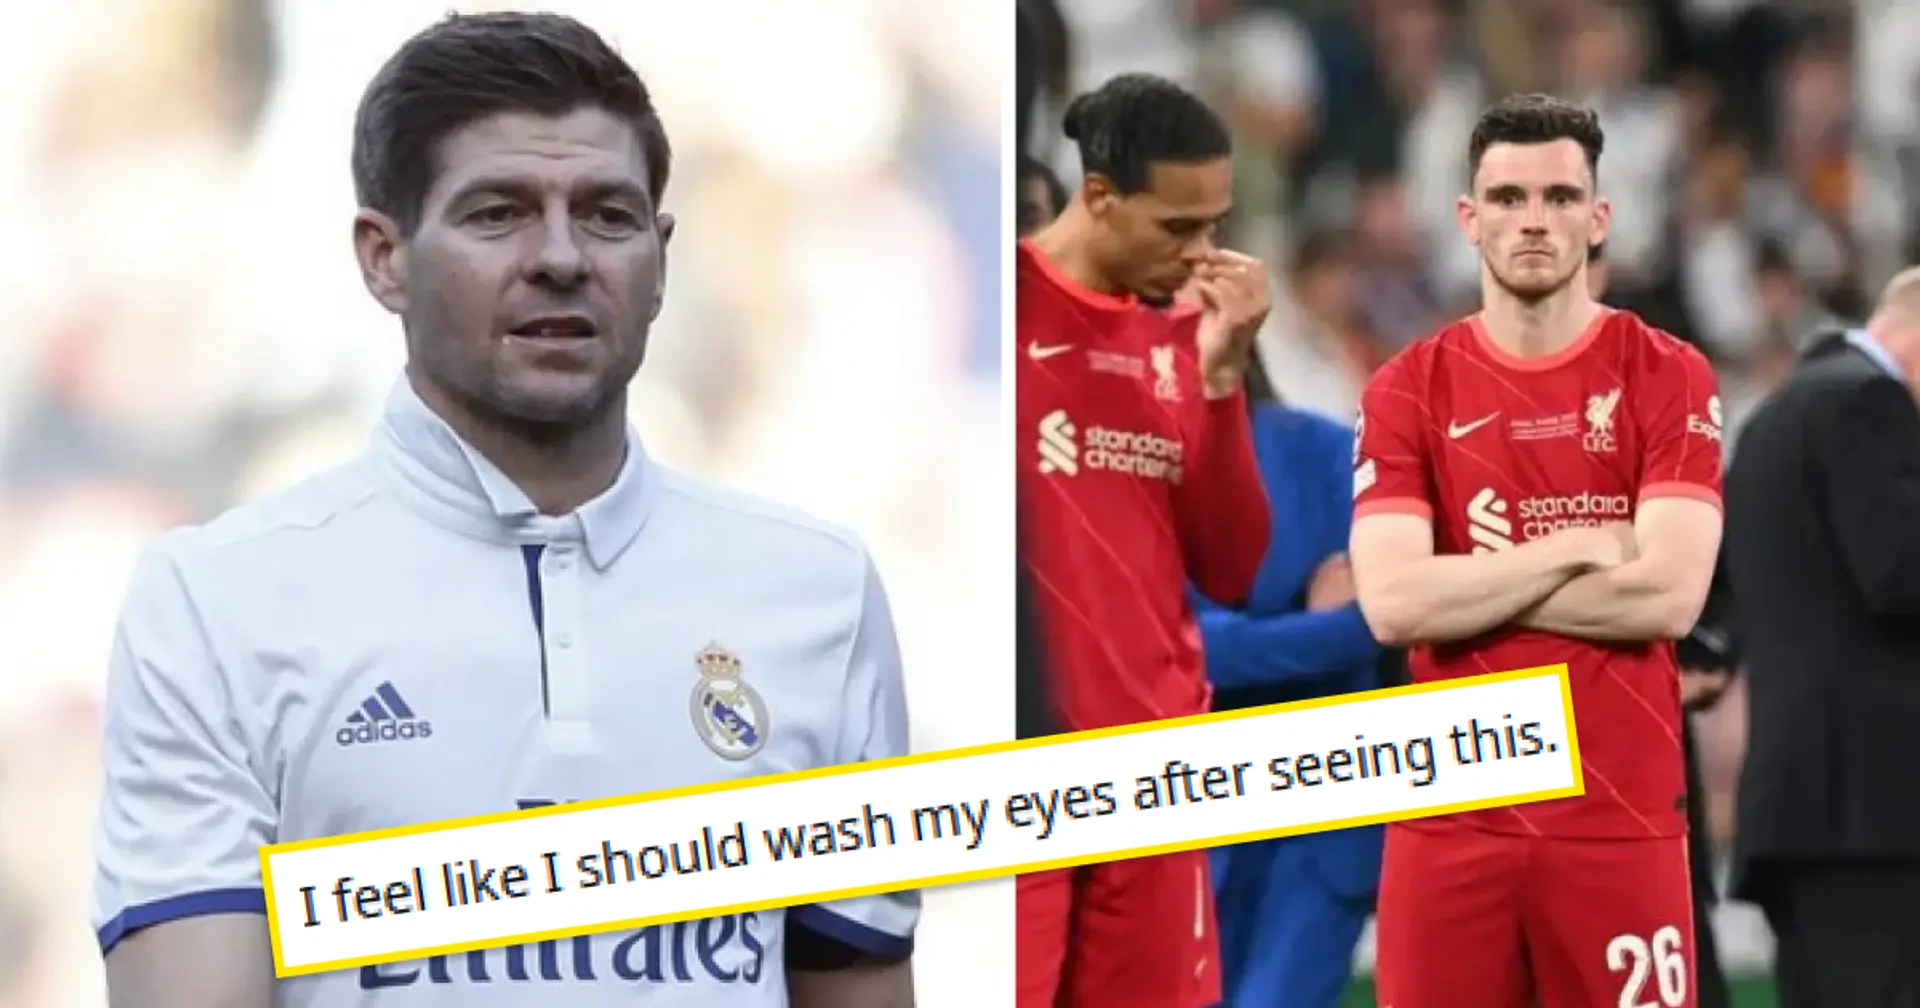 "Je me sens malade": les fans de Liverpool réagissent à la photo de Steven Gerrard dans un maillot du Real Madrid